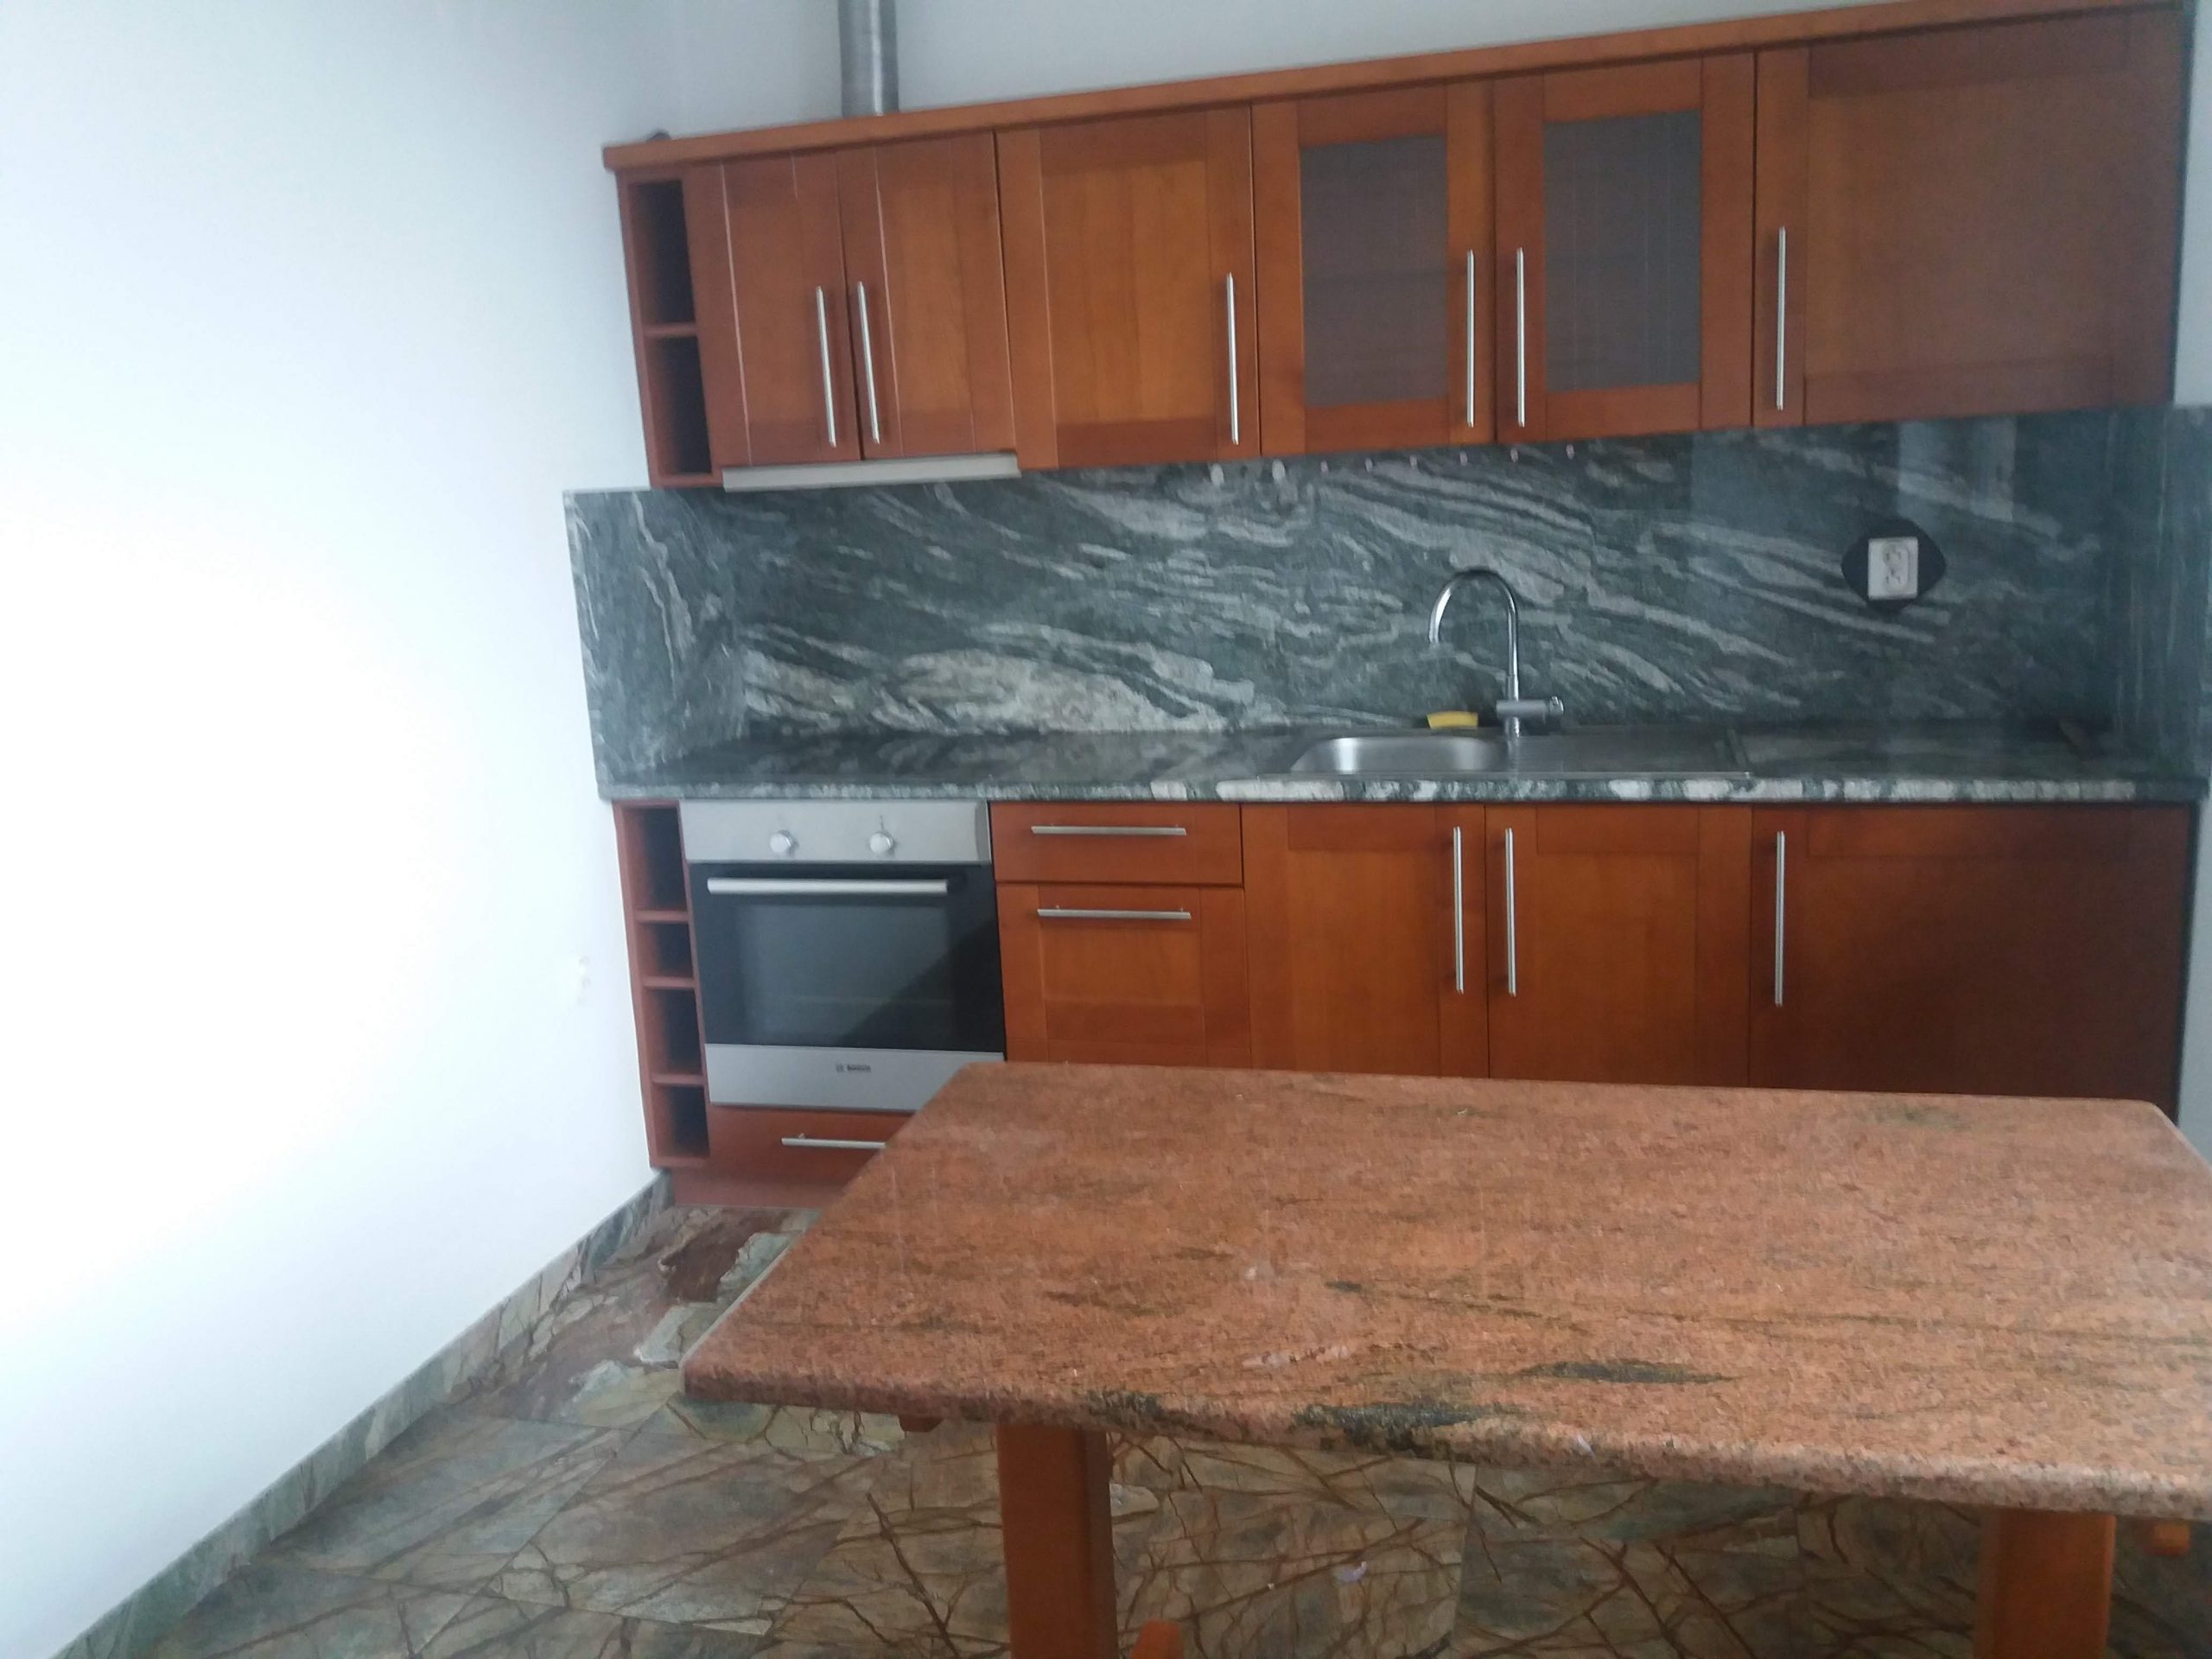 Predané – 2 izbový byt v novostavbe v Šuranoch